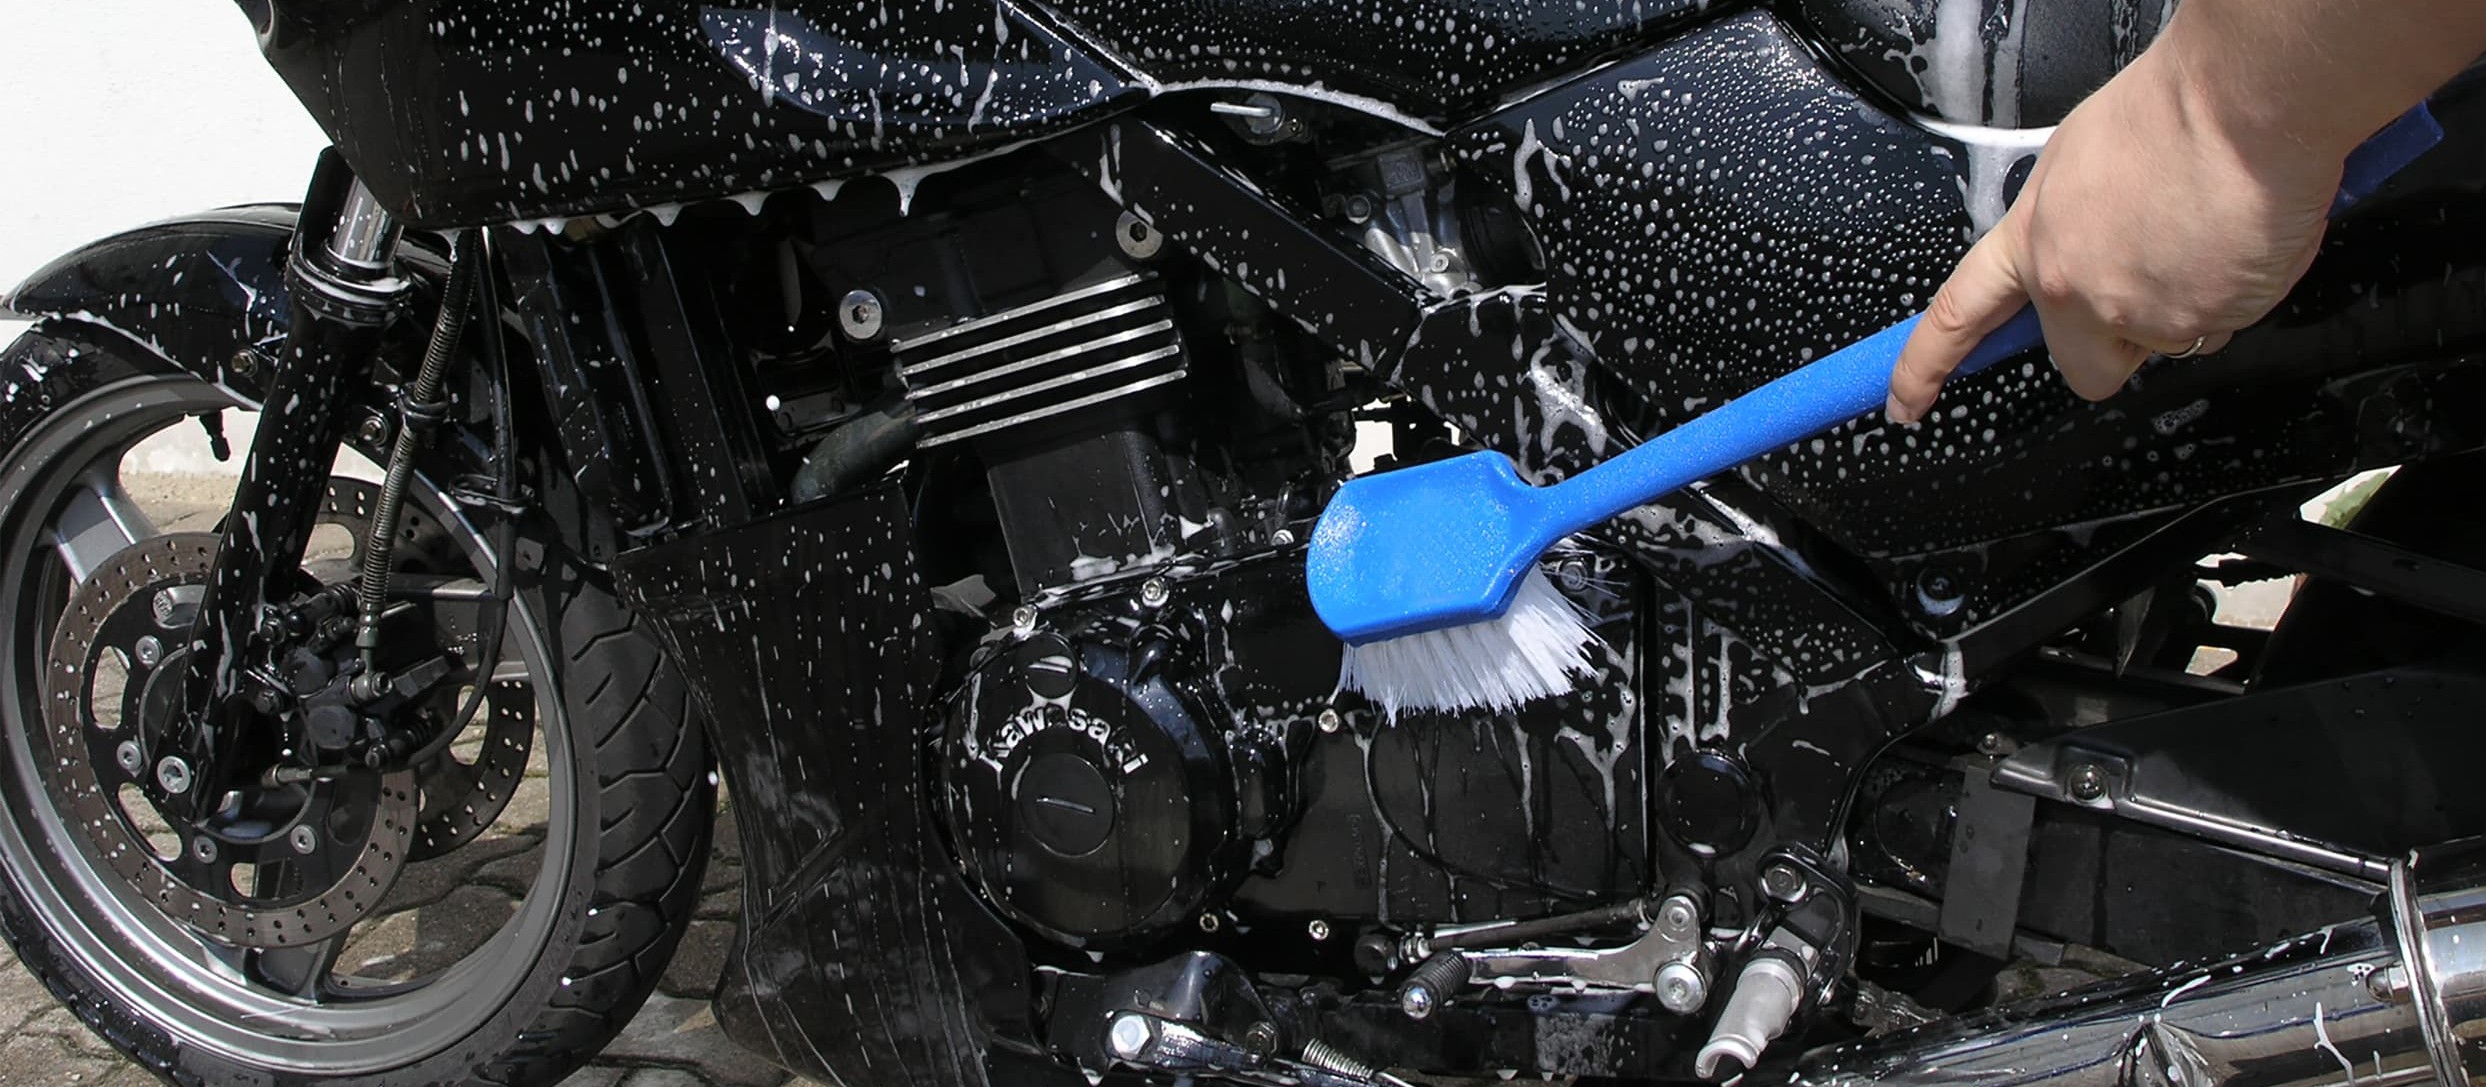 Motorrad waschen und pflegen